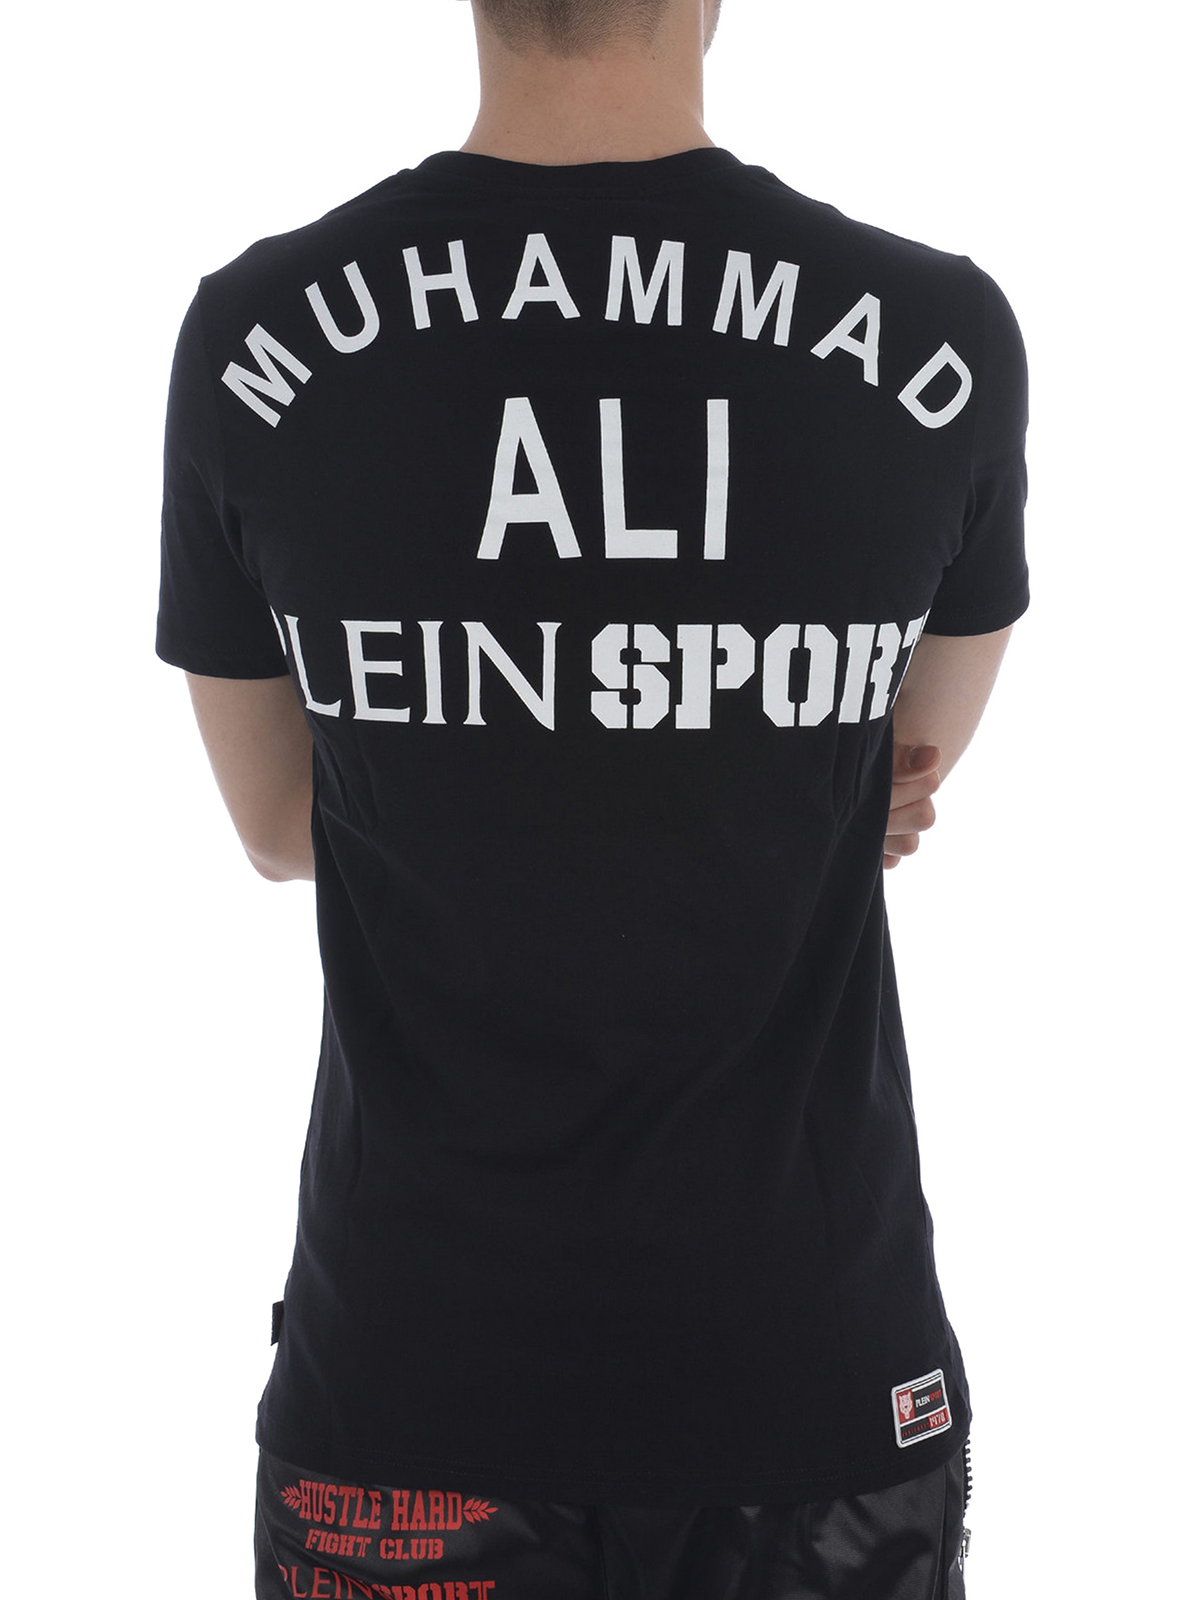 plein sport muhammad ali t shirt